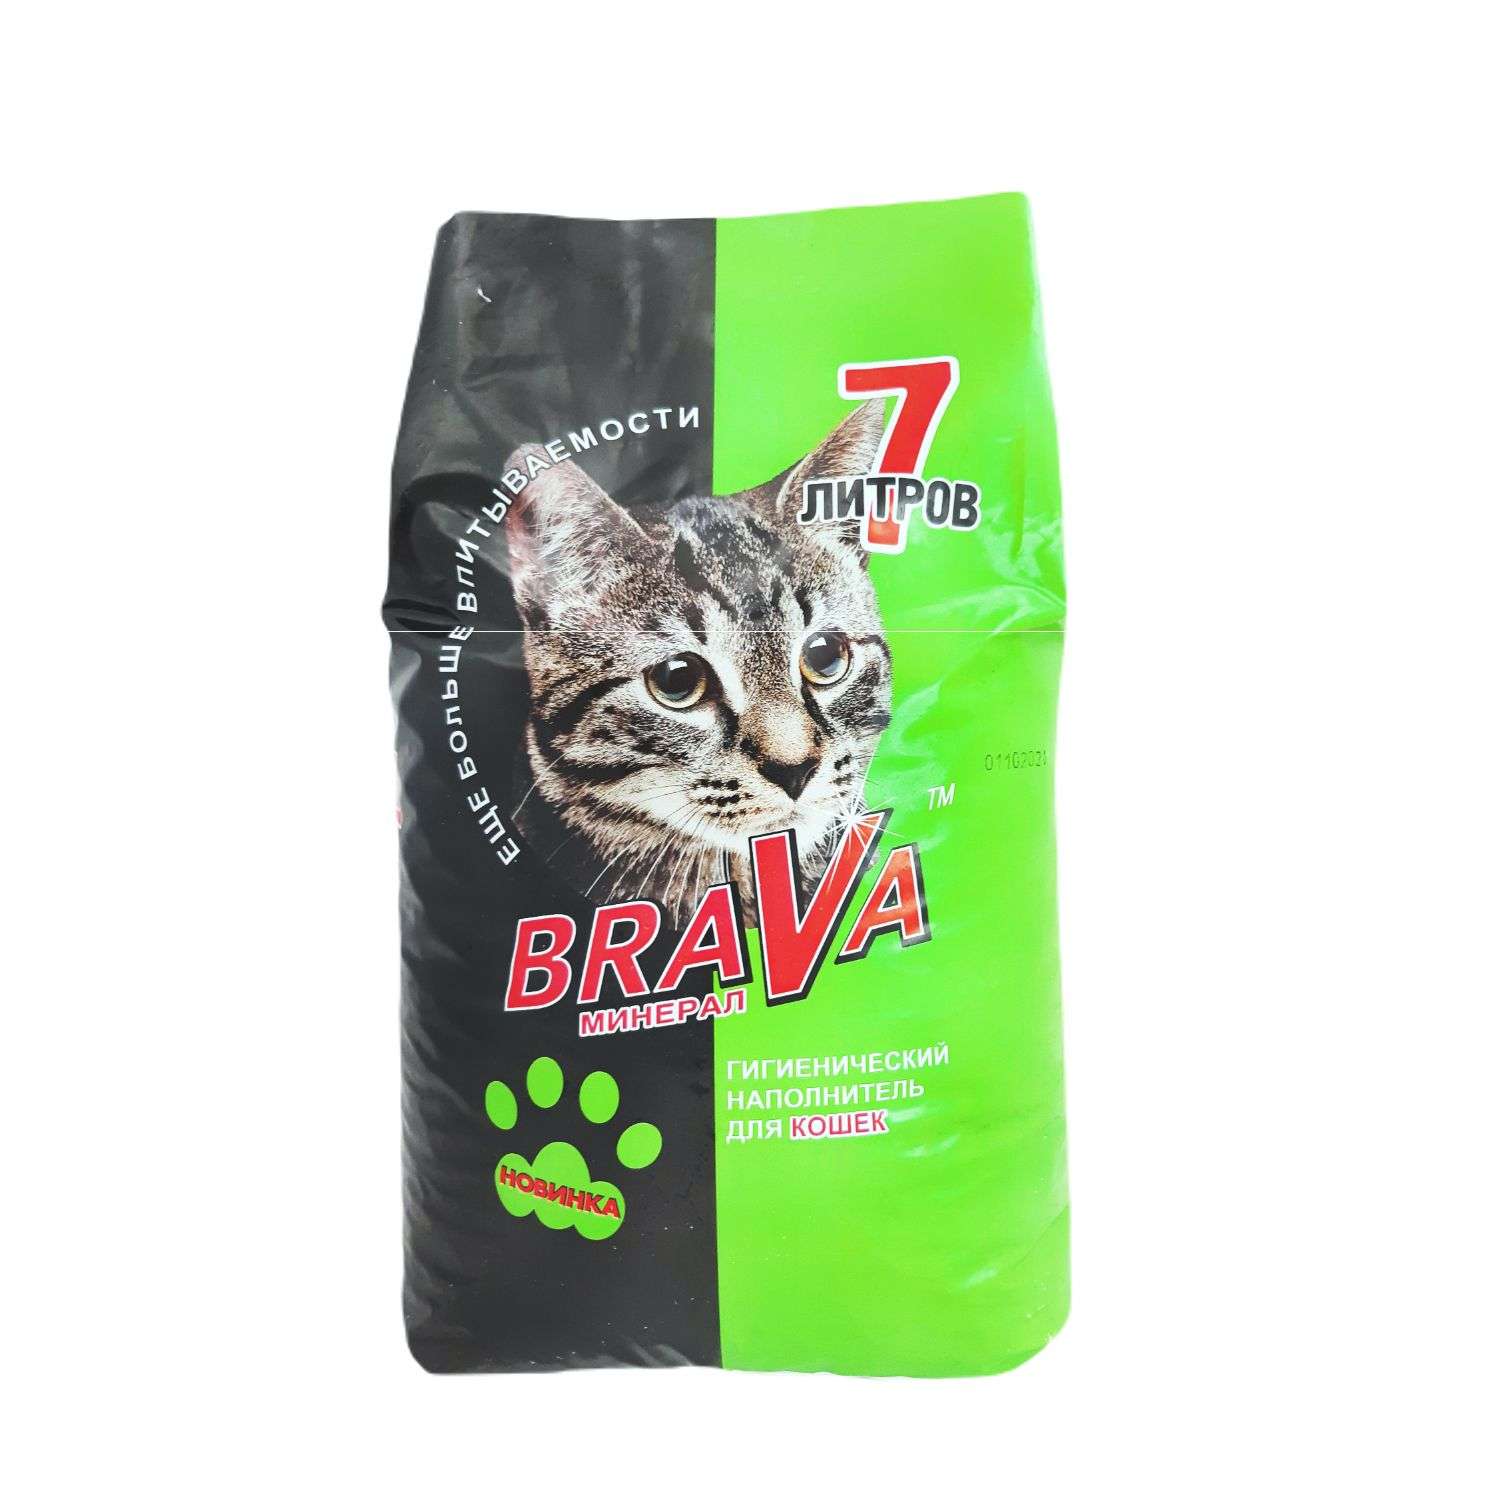 Наполнитель для кошек BraVa минеральный бентонитовый универсальный 7л - фото 1